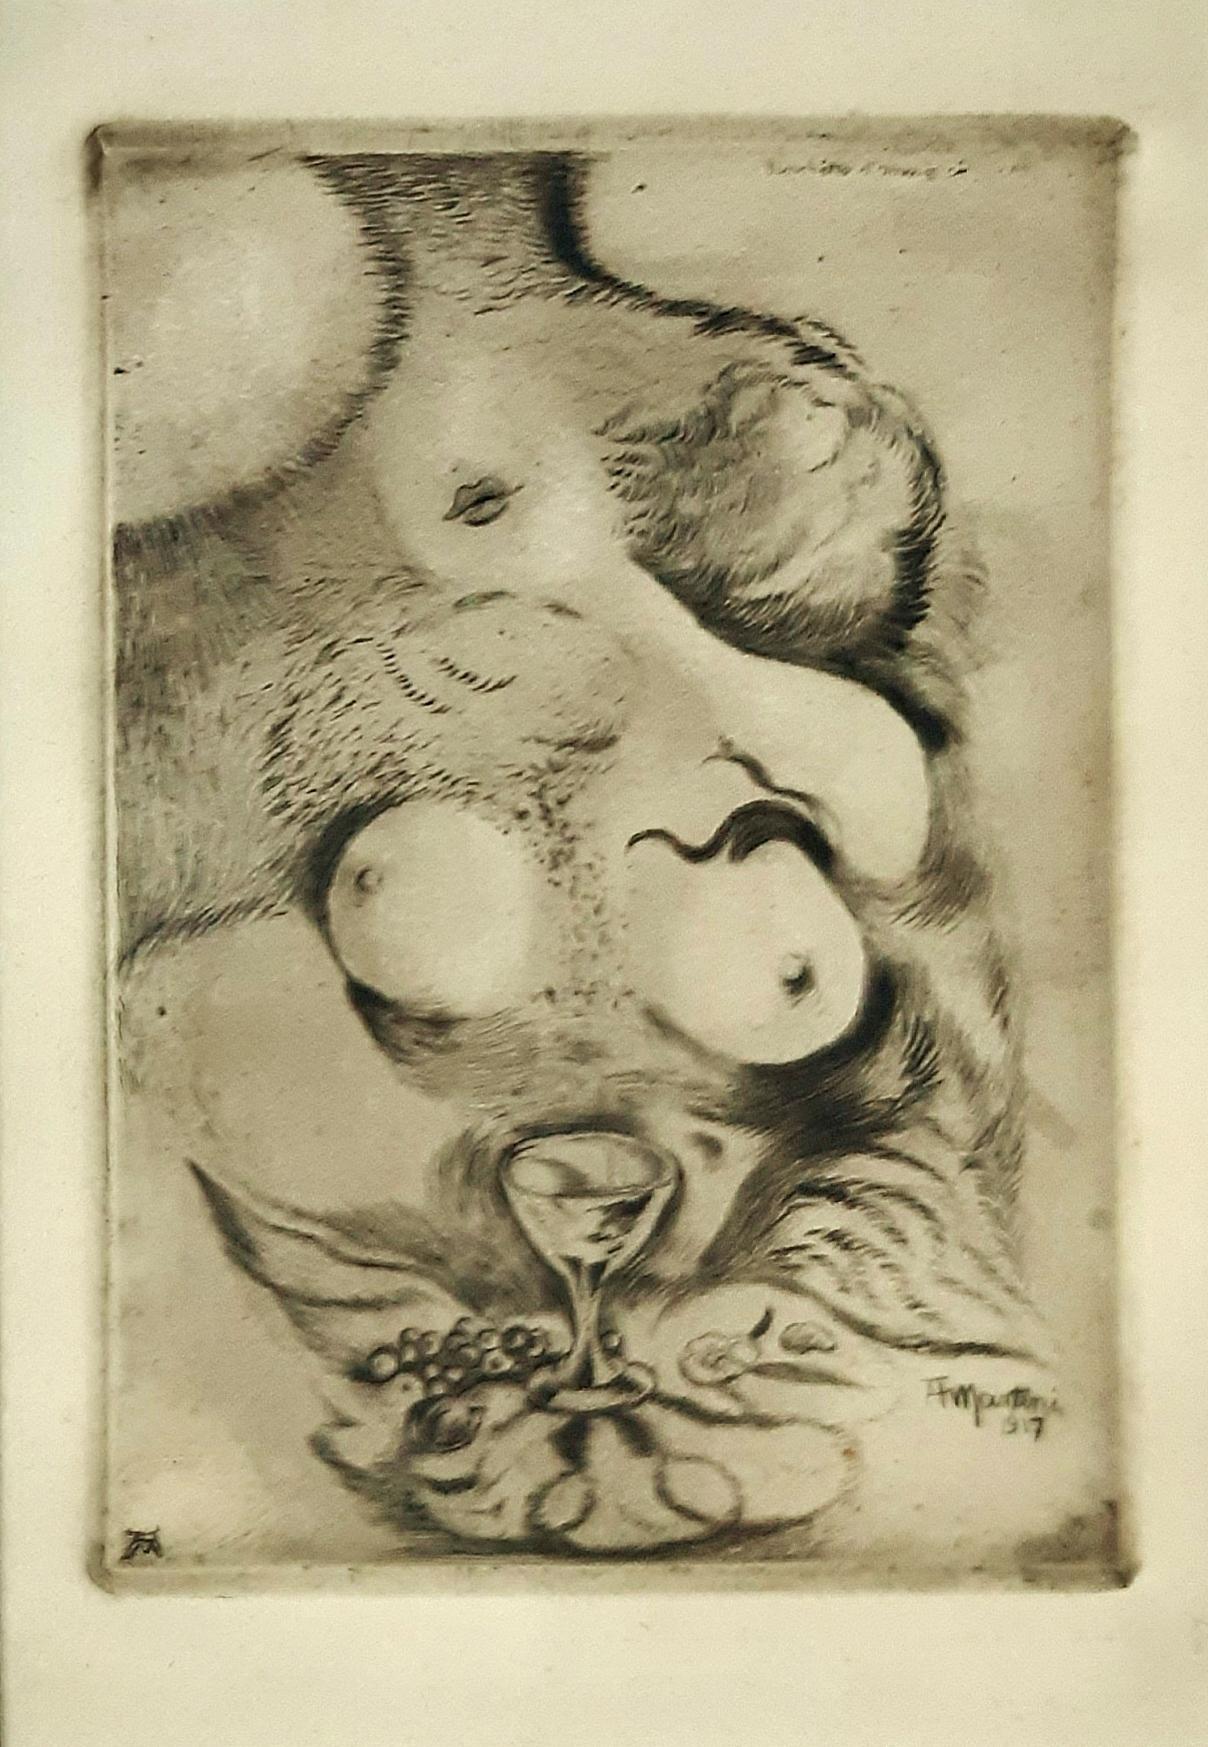 Alberto Martini Figurative Print - Banchetto d’Amore - Original Etching by A. Martini - 1917